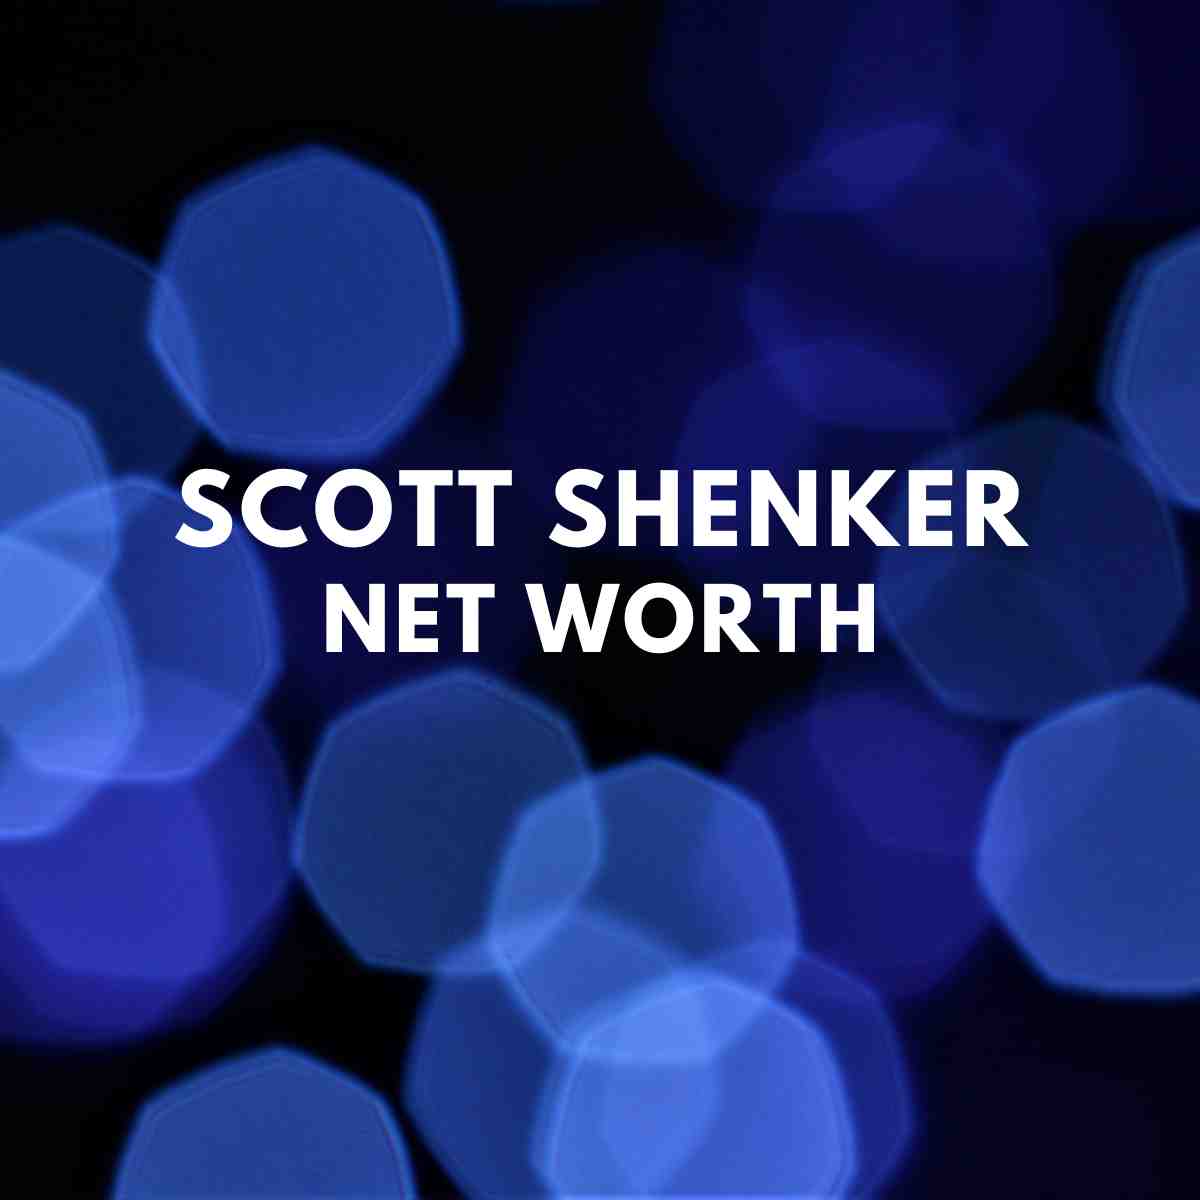 Scott Shenker net worth